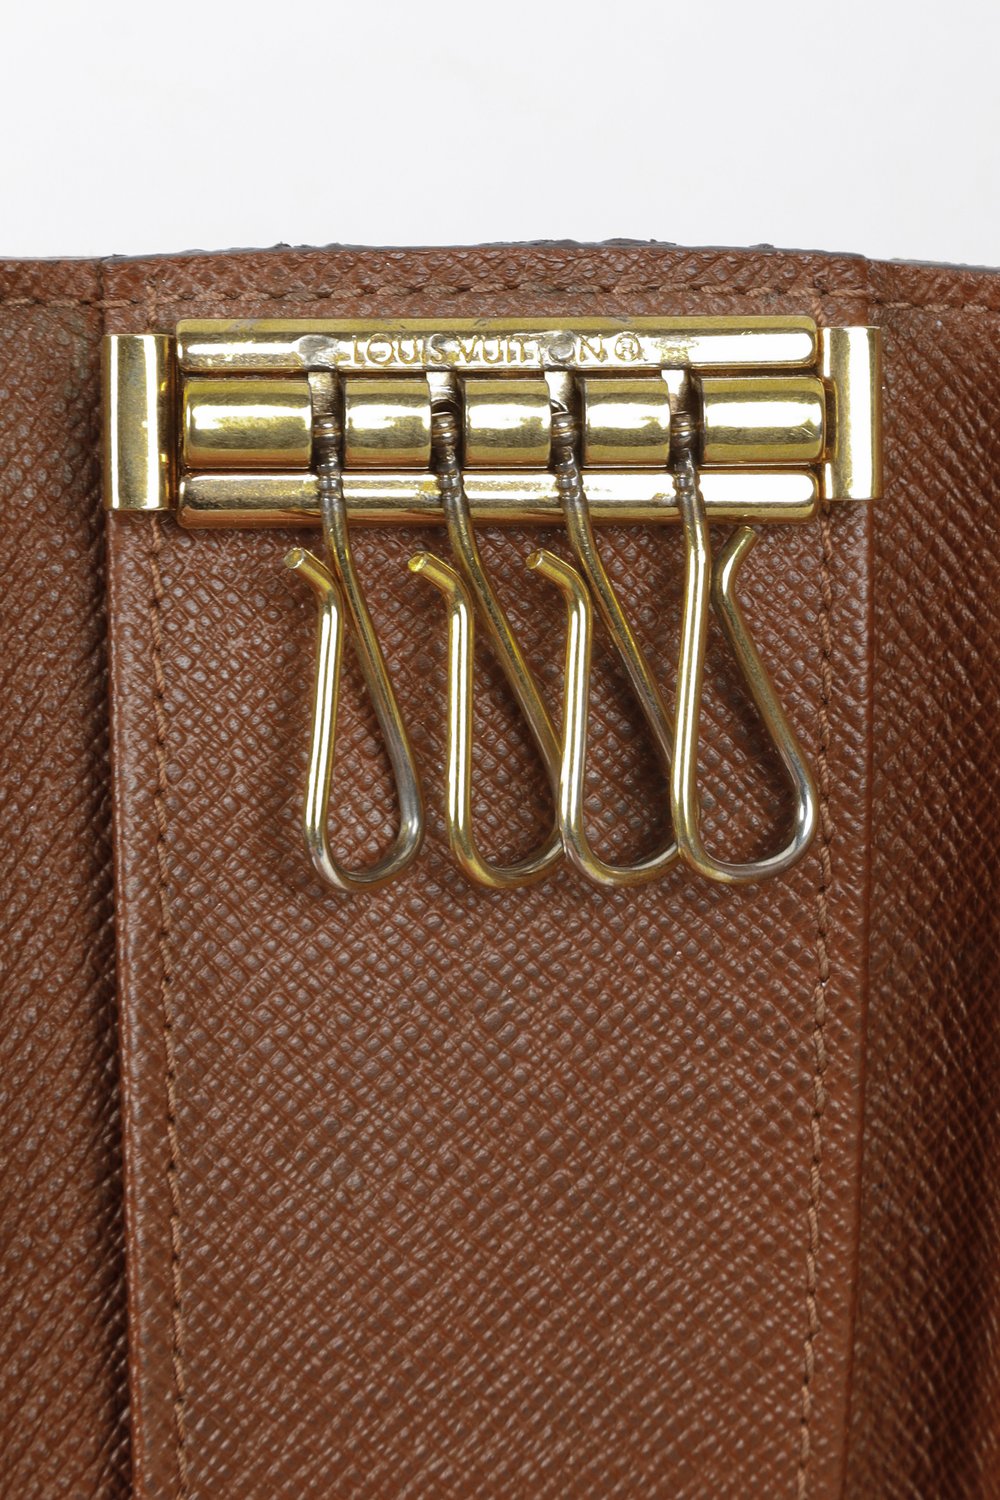 Vintage Authentic Louis Vuitton Key Holder Case Monogram